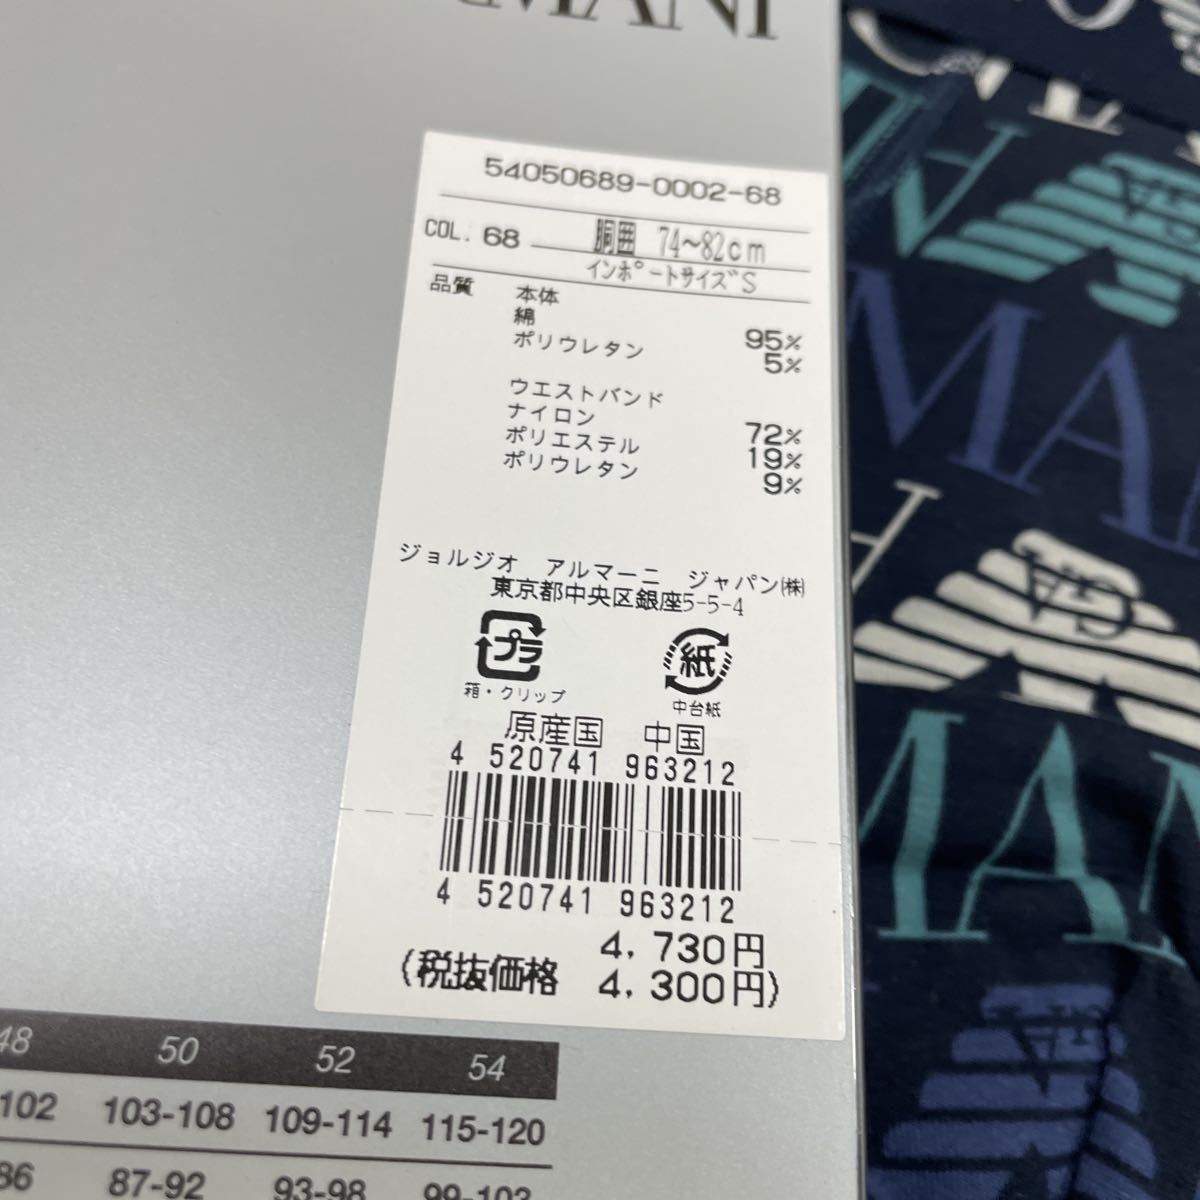 B стоимость доставки 140 иен ~ новый товар с ящиком Emporio Armani боксеры S размер ( Япония S-M)